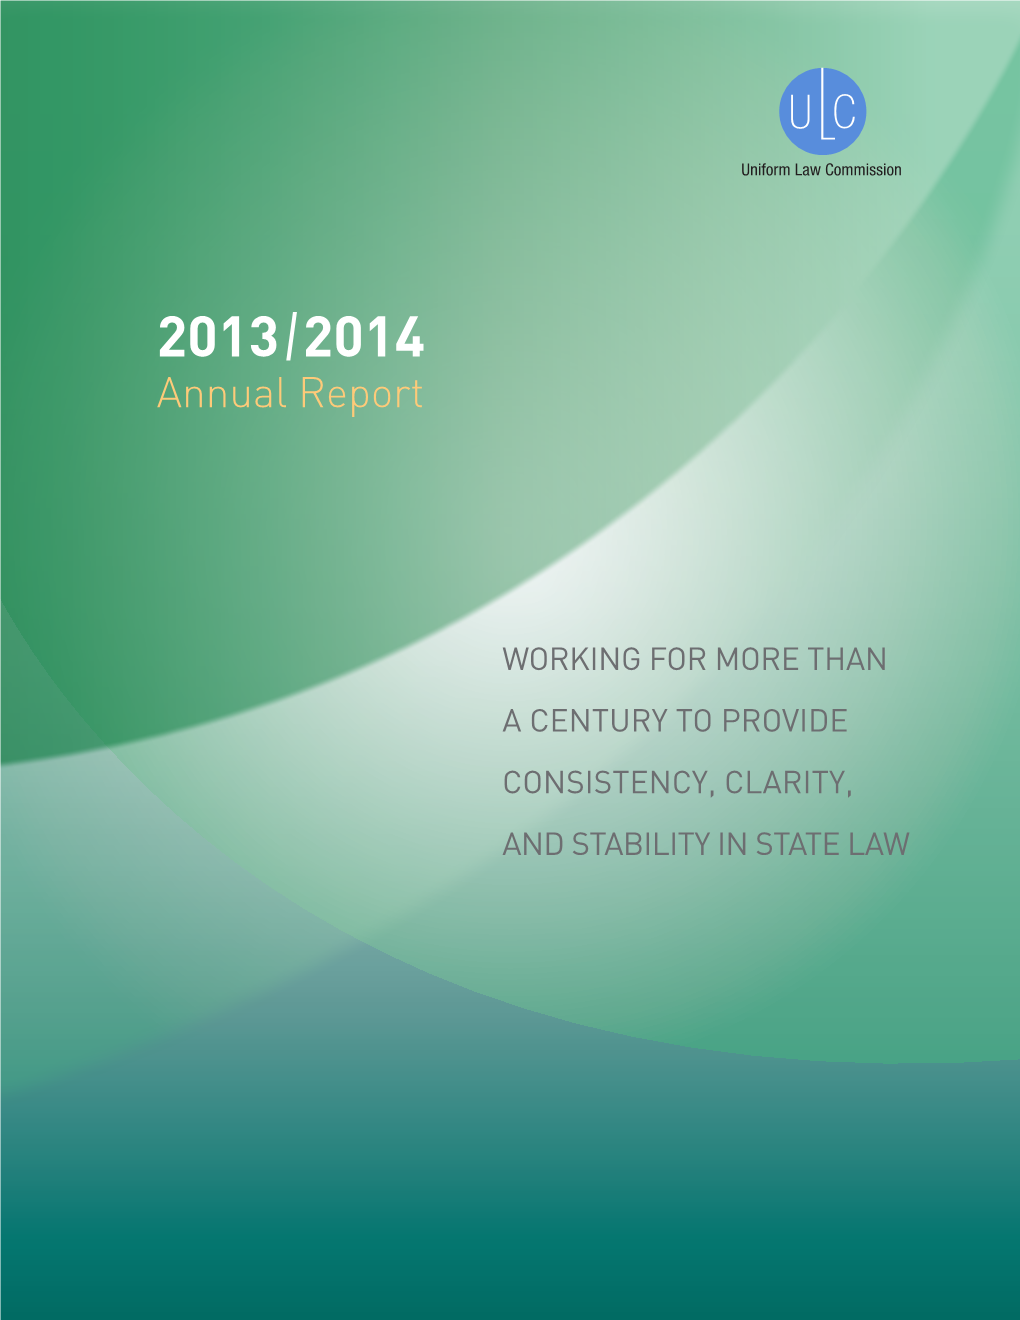 ULC 2014 Annual Report 11-19.Indd